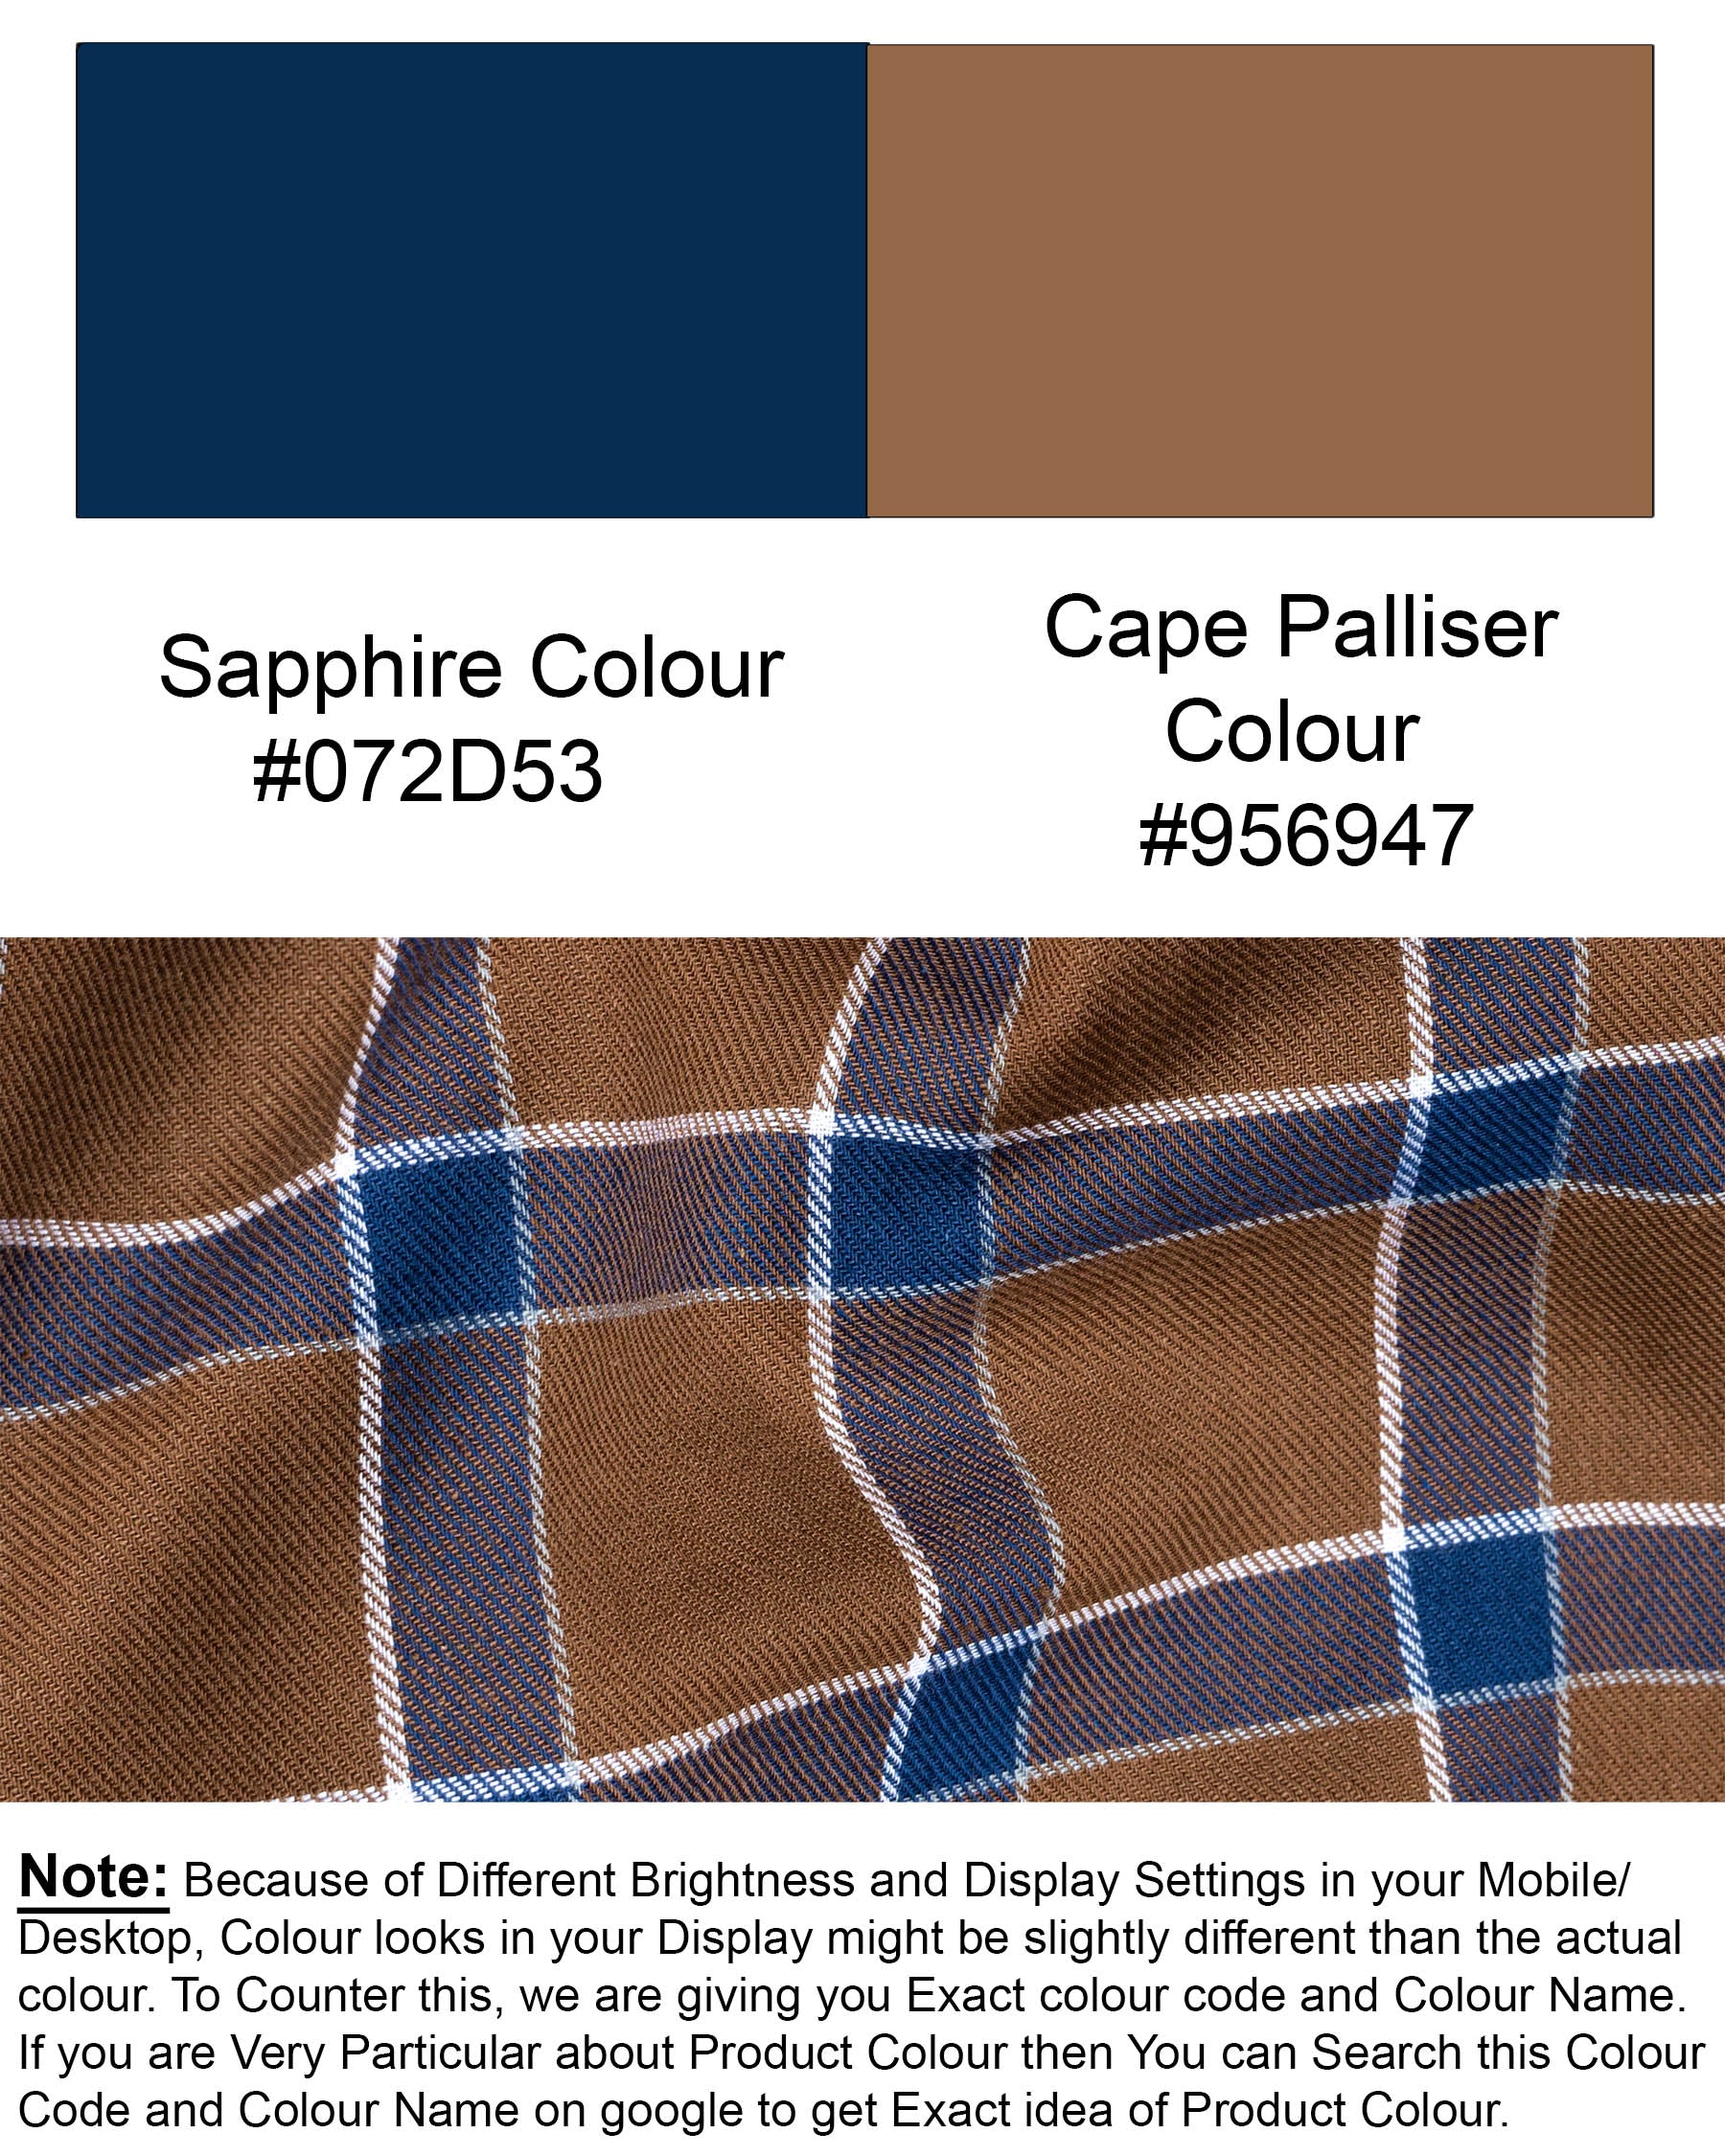 Sapphire Blue and Cape Palliser brown Twill Windowpane Premium Cotton Shirt 6375-BD-38,6375-BD-H-38,6375-BD-39,6375-BD-H-39,6375-BD-40,6375-BD-H-40,6375-BD-42,6375-BD-H-42,6375-BD-44,6375-BD-H-44,6375-BD-46,6375-BD-H-46,6375-BD-48,6375-BD-H-48,6375-BD-50,6375-BD-H-50,6375-BD-52,6375-BD-H-52